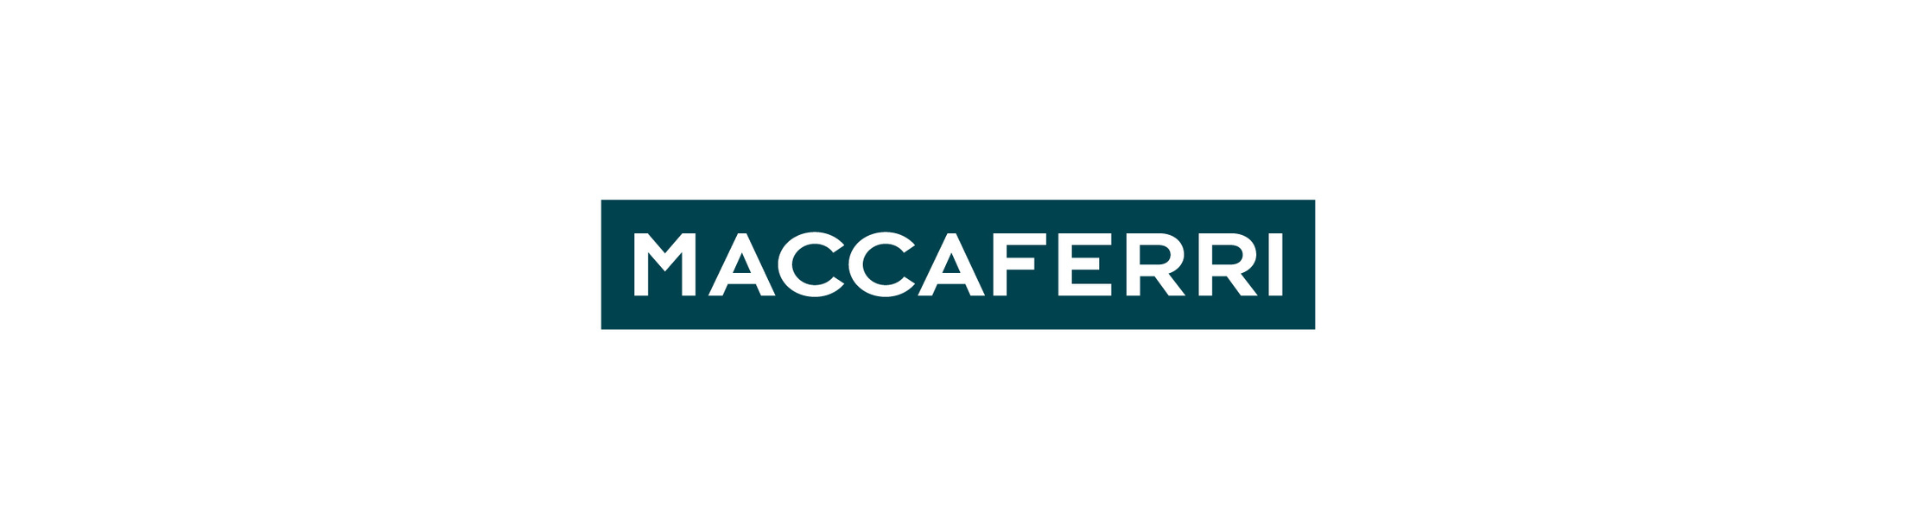 Η Ambienta επενδύει στην Officine Maccaferri